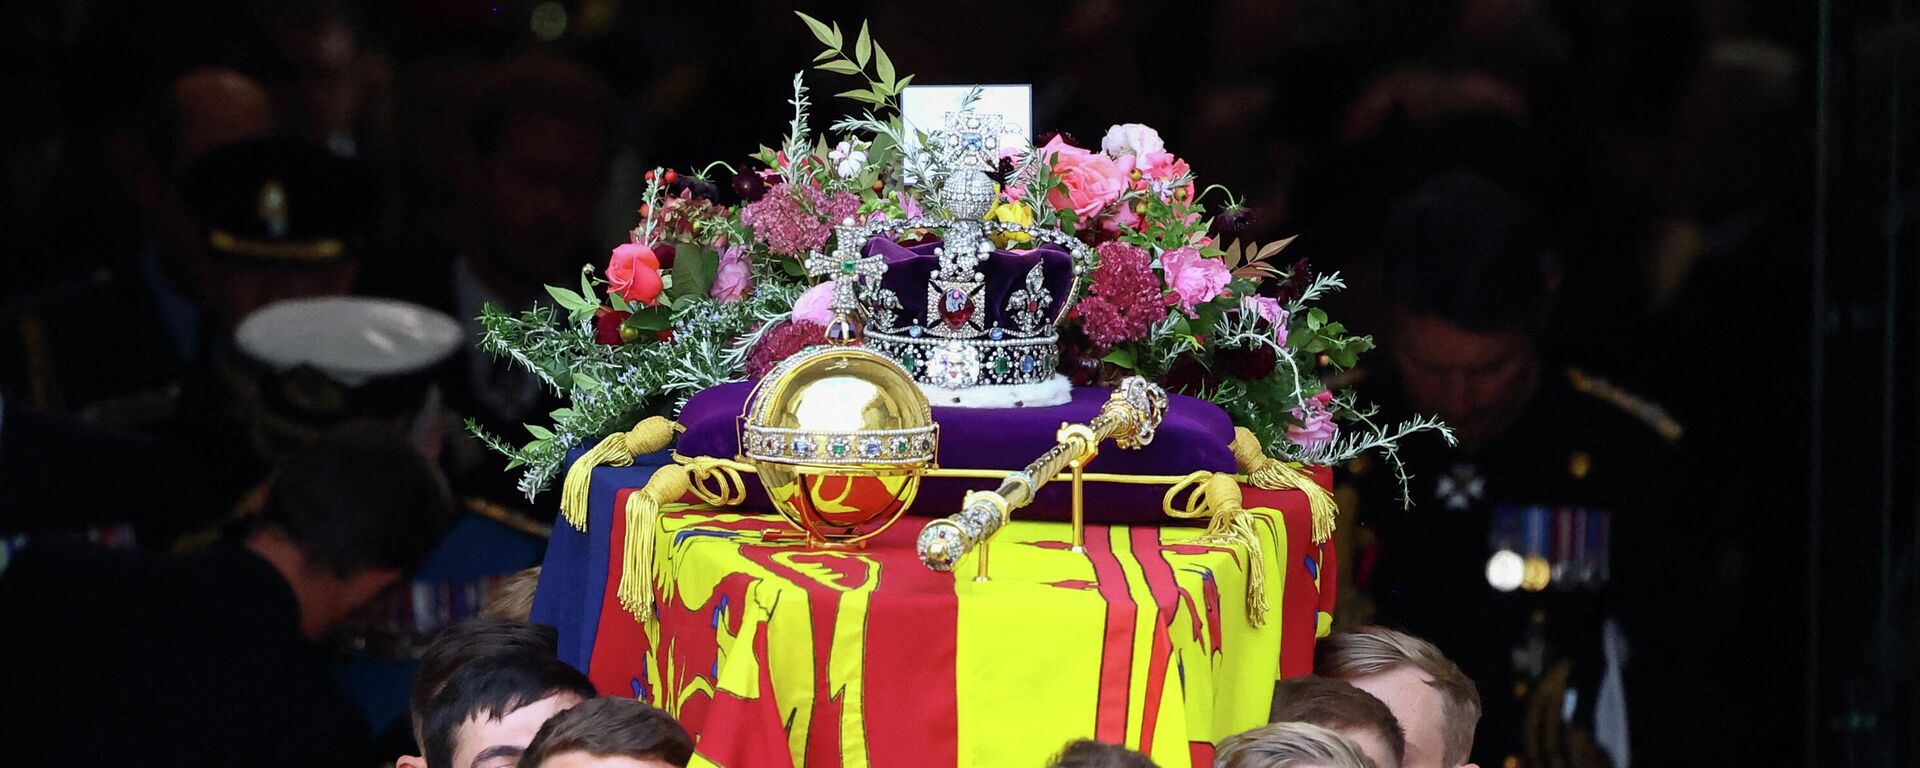 Гроб британской королевы Елизаветы II выносят из Вестминстерского аббатства в Лондоне 19 сентября 2022 года во время Государственной панихиды - Sputnik Латвия, 1920, 19.09.2022